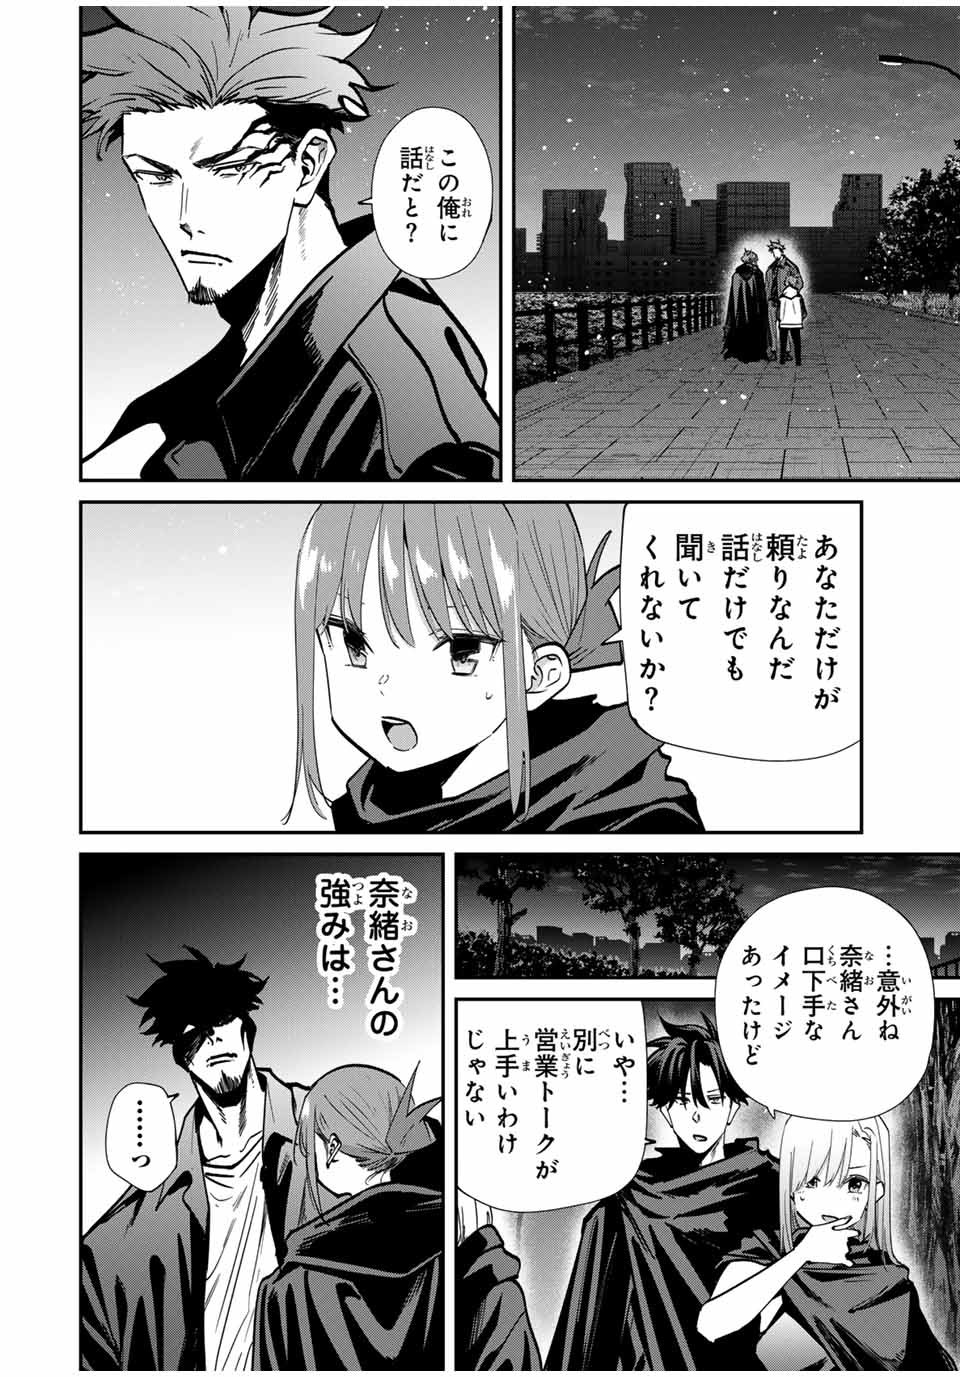 Kono Sekai ga Izure Horobu Koto wo, Ore dake ga Shitte Iru - Chapter 79 - Page 6